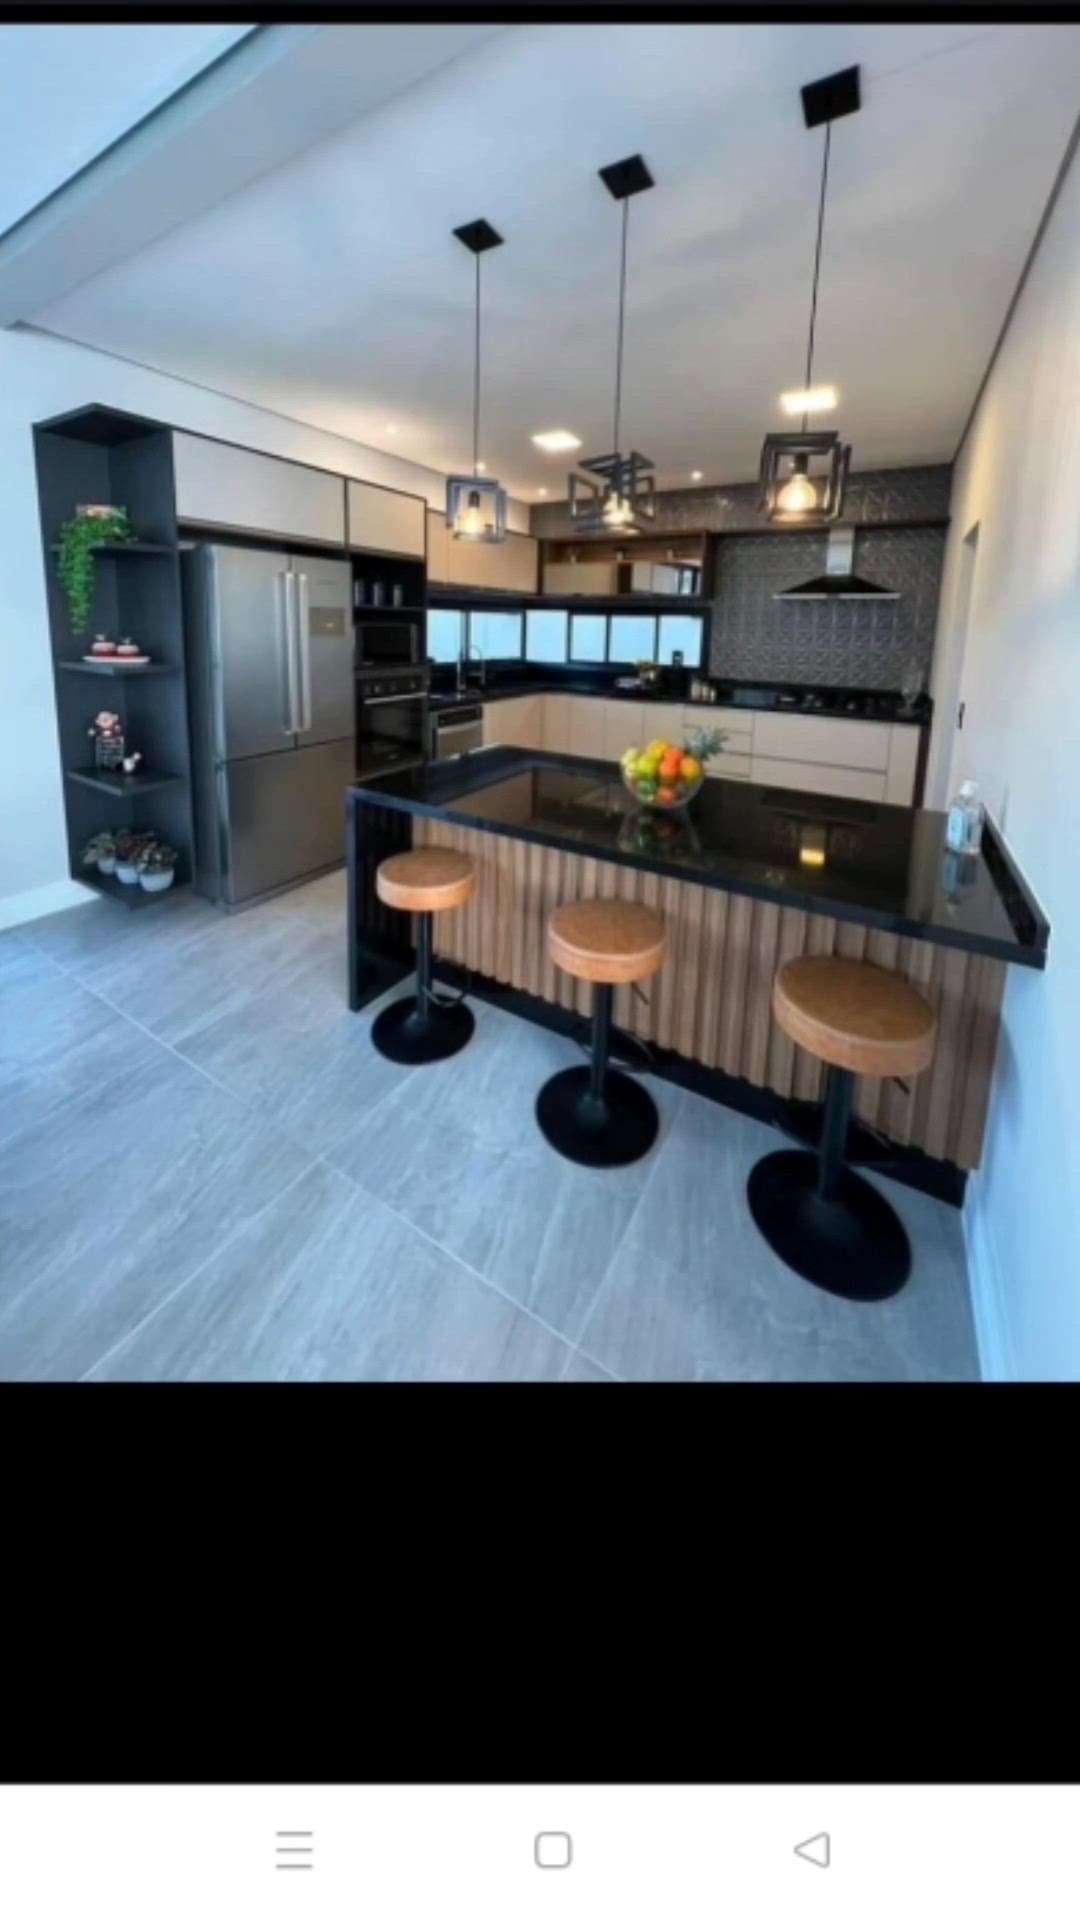 #ModularKitchen kitchen design modular kitchen design granite kitchen wall tiles kitchen